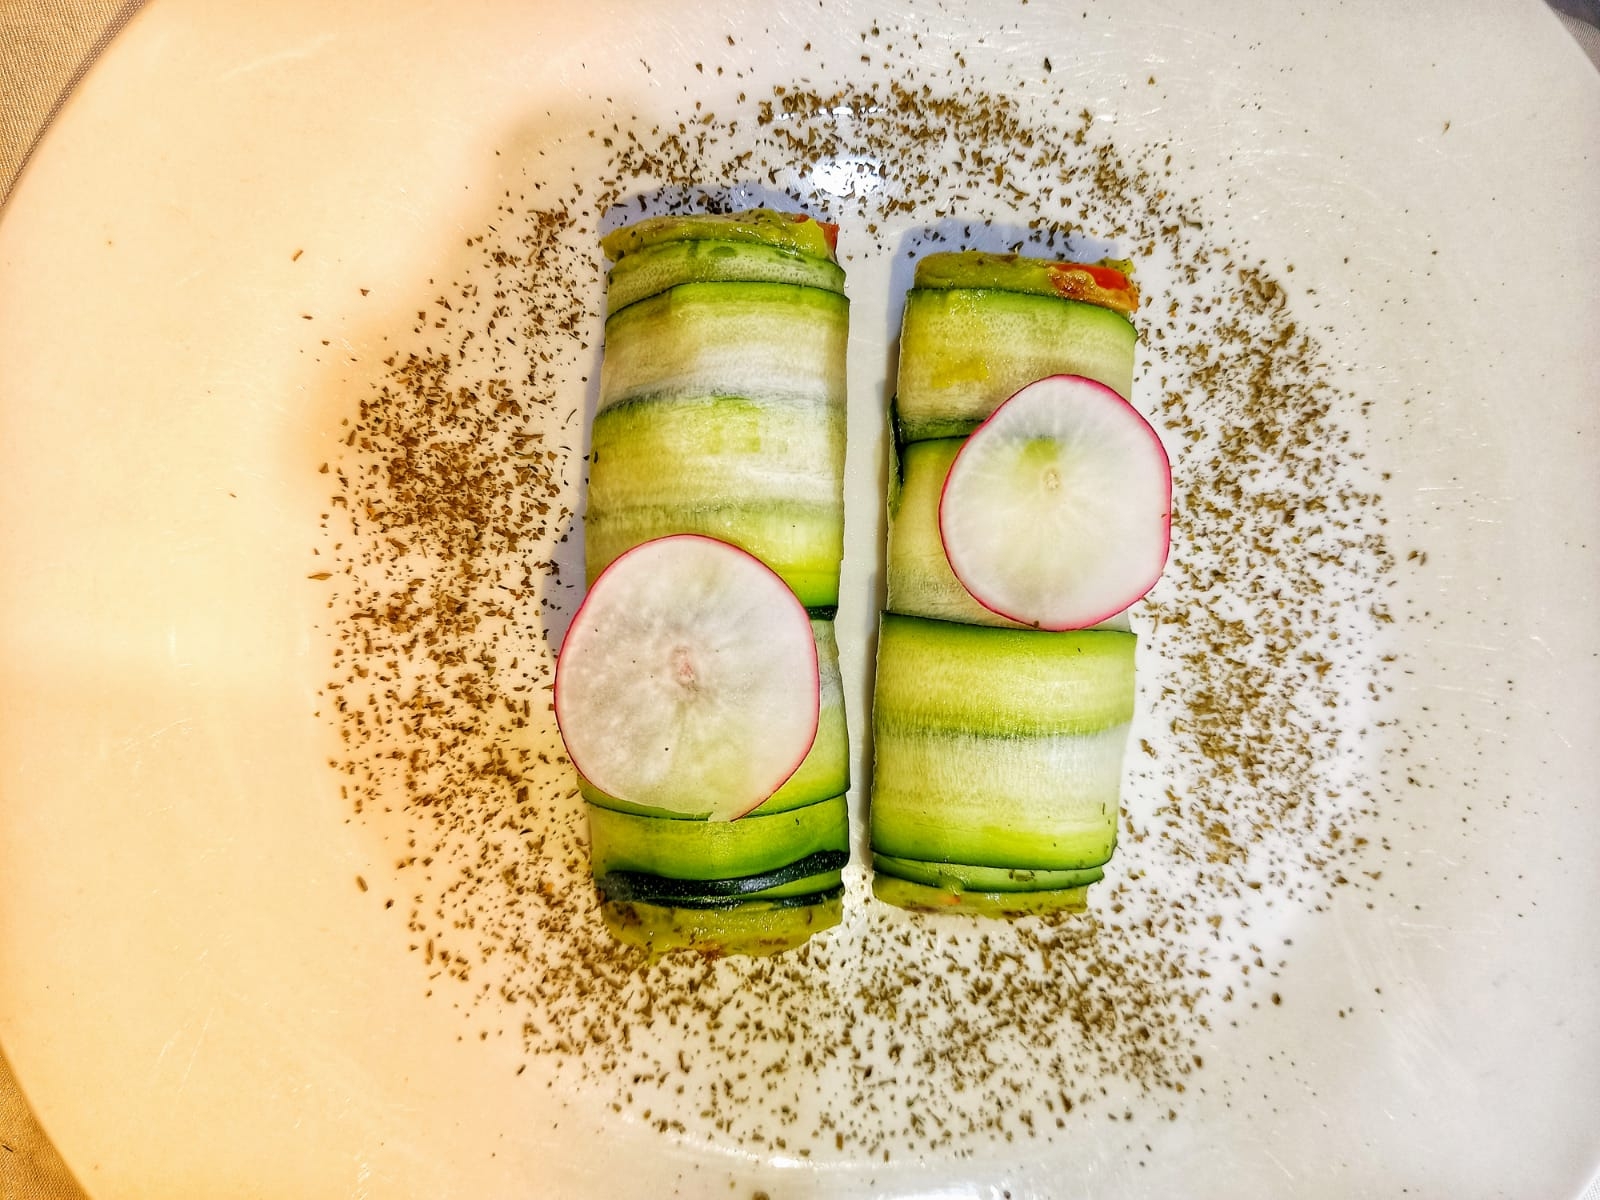 Canelón de zuchinni con guacamol es una entrada saludable y fácil de preparar, receta del chef Erik Núñez. (Foto Prensa Libre, cortesía de Erik Núñez)